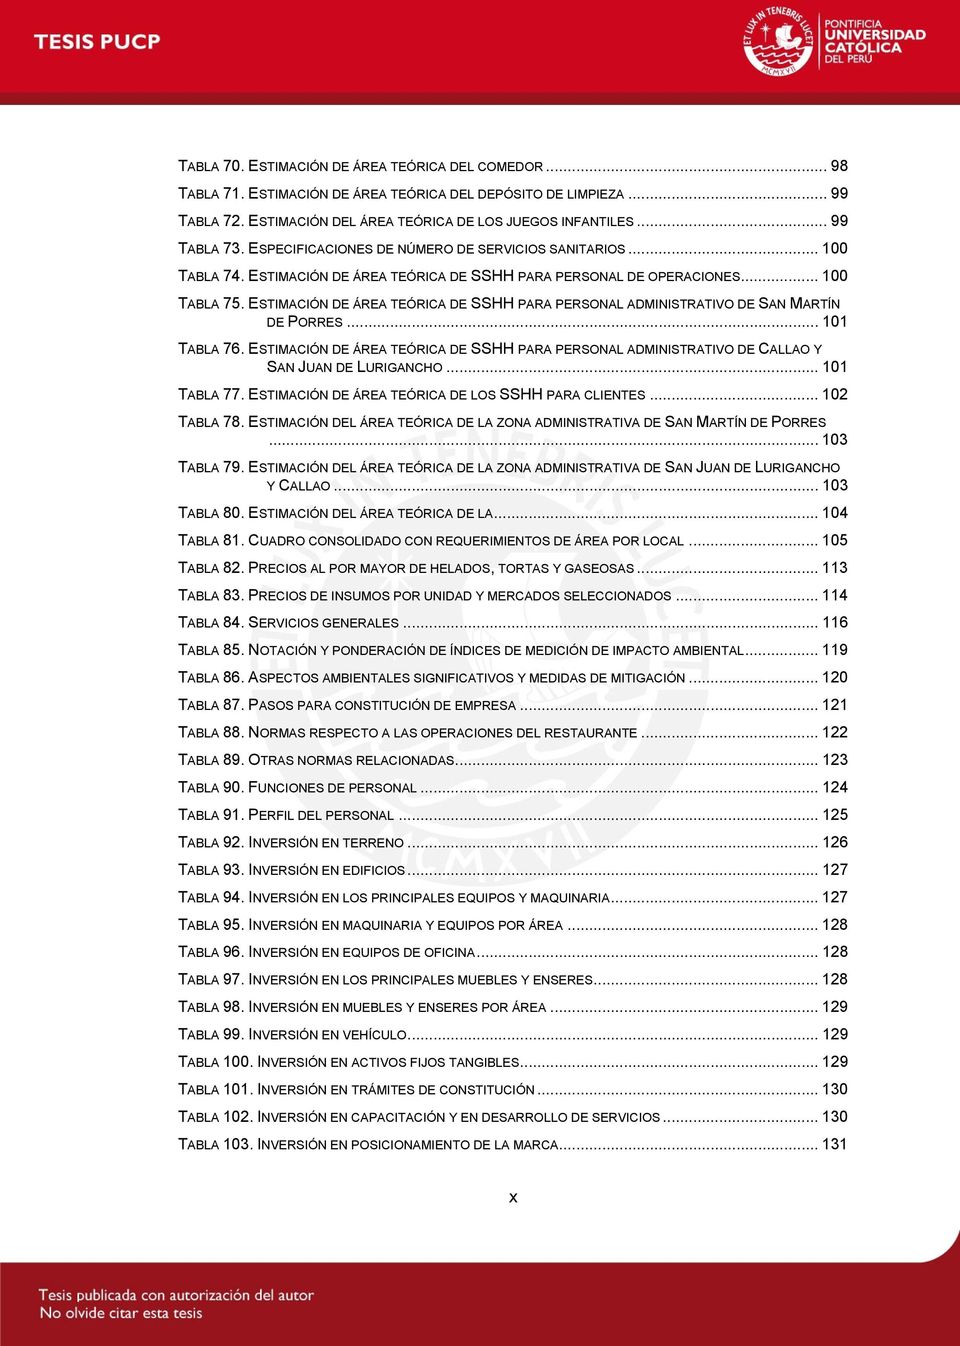 ESTIMACIÓN DE ÁREA TEÓRICA DE SSHH PARA PERSONAL ADMINISTRATIVO DE SAN MARTÍN DE PORRES... 101 TABLA 76.